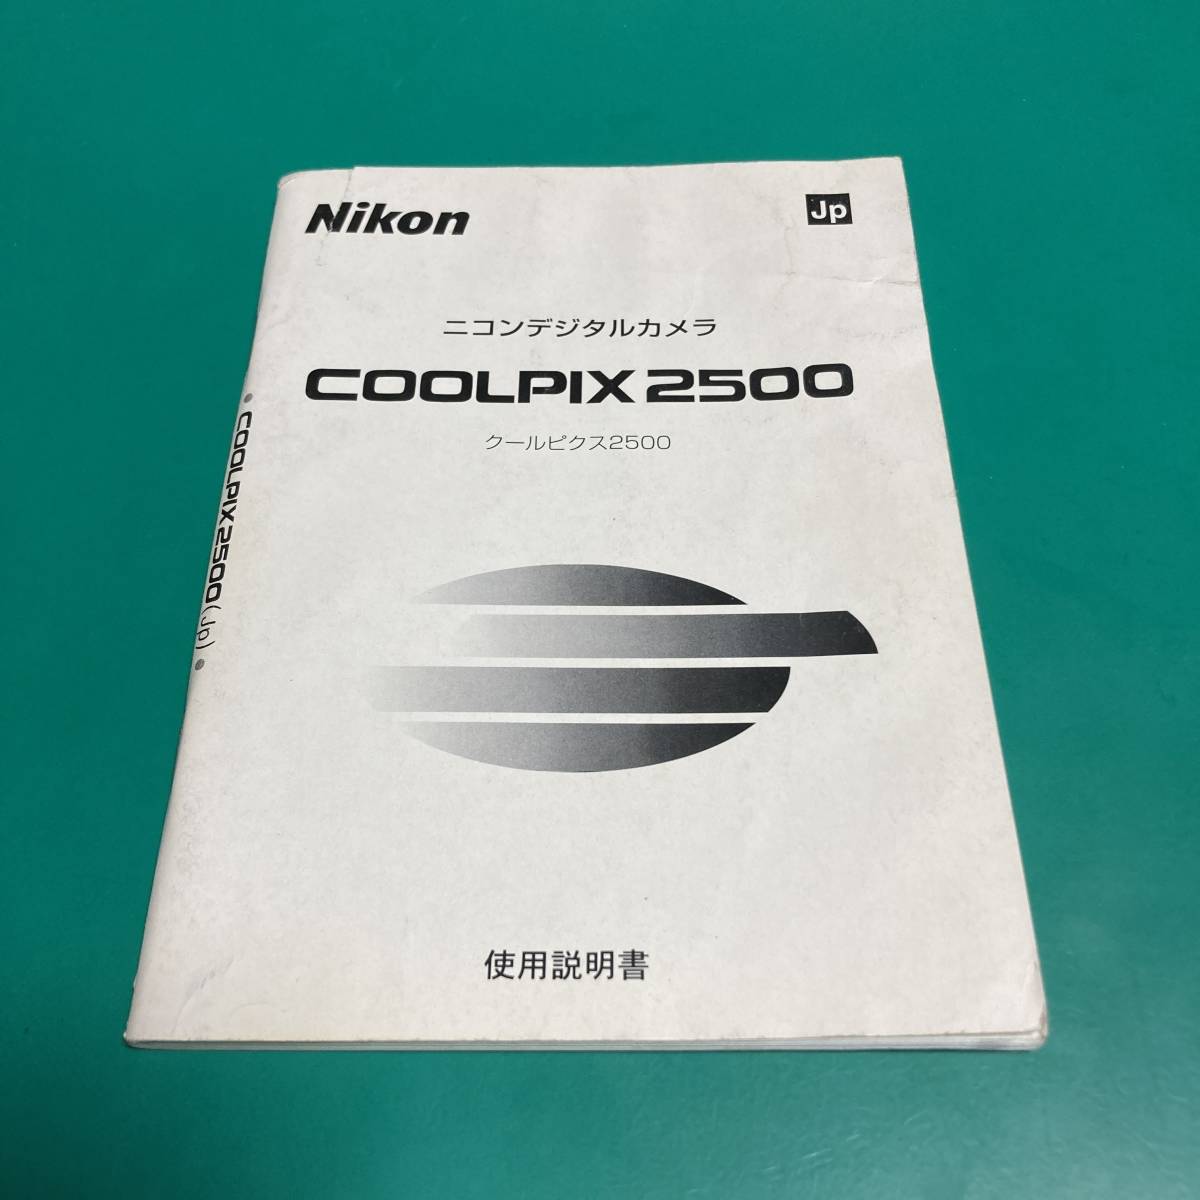 ニコン COOLPIX 2500 使用説明書 中古品 R00555_画像1